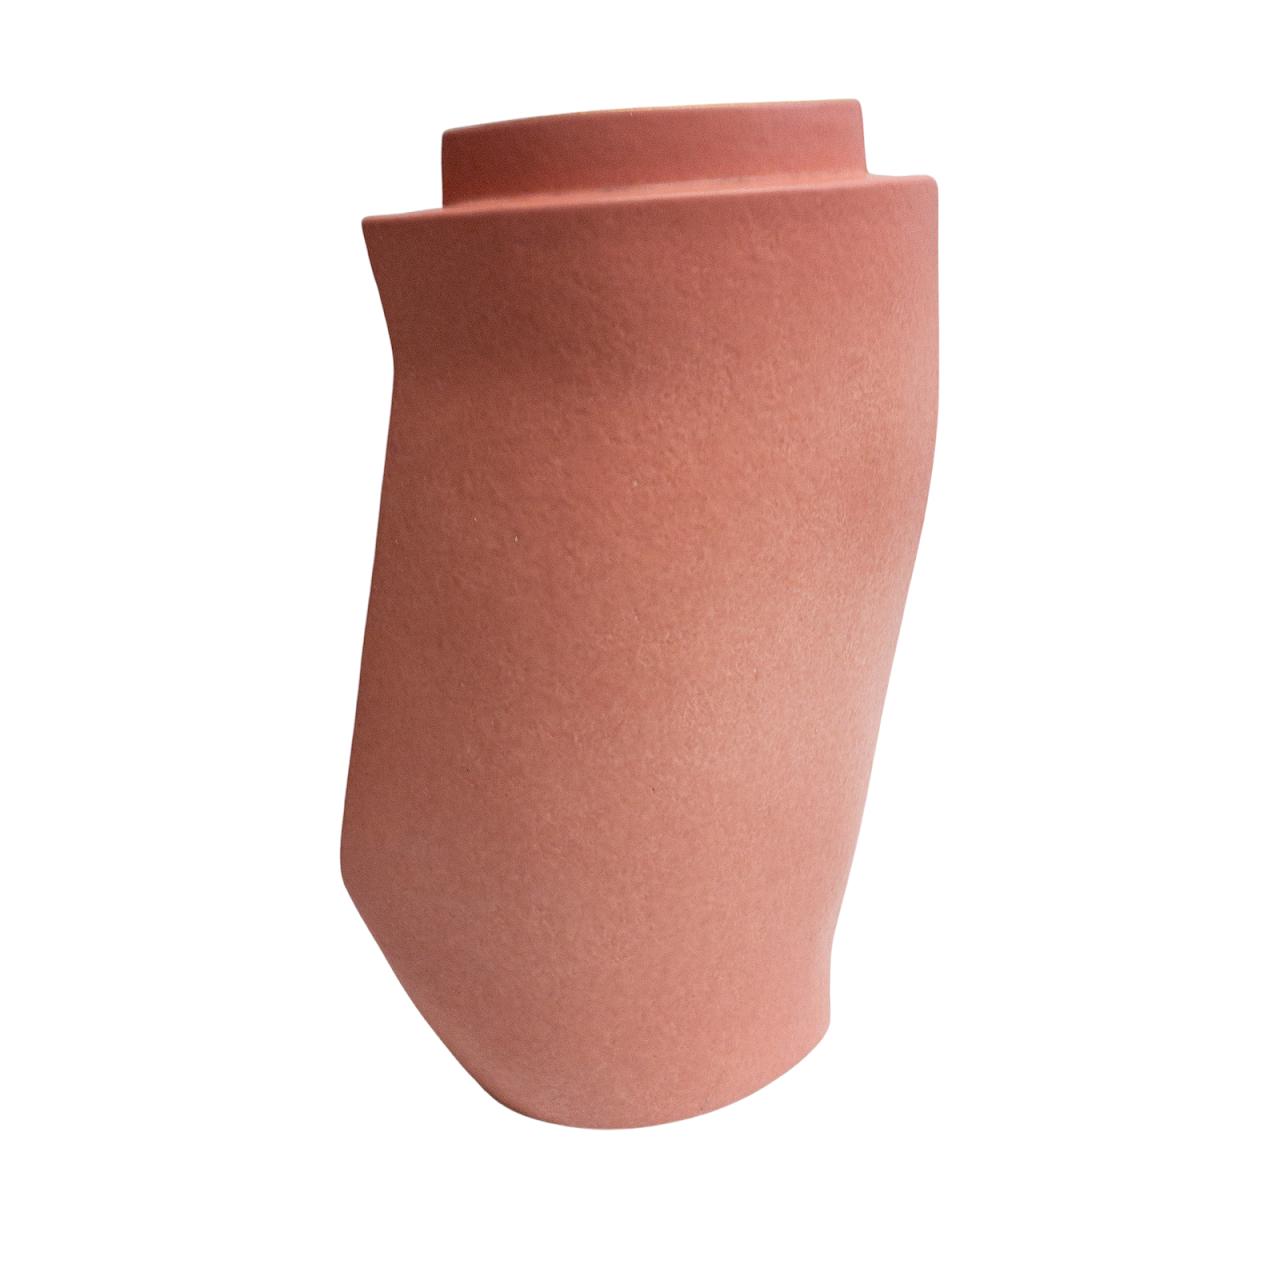 Signed Pink Ceramic Modernist Vase